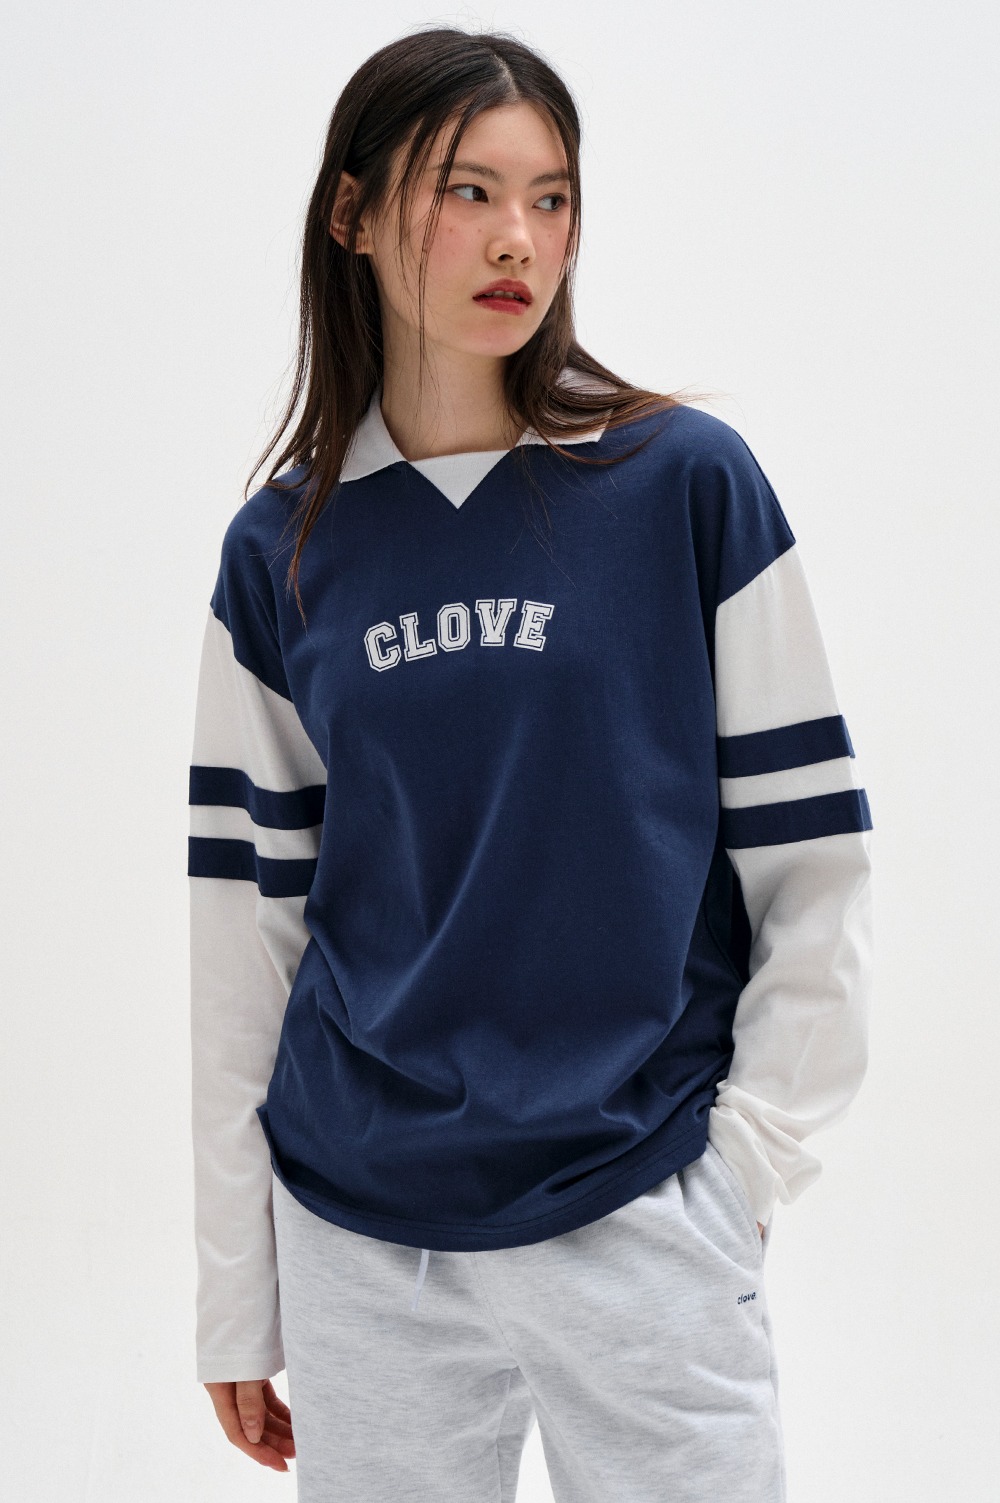 clove - [23FW clove] Rugby Jersey T-Shirt (Navy)